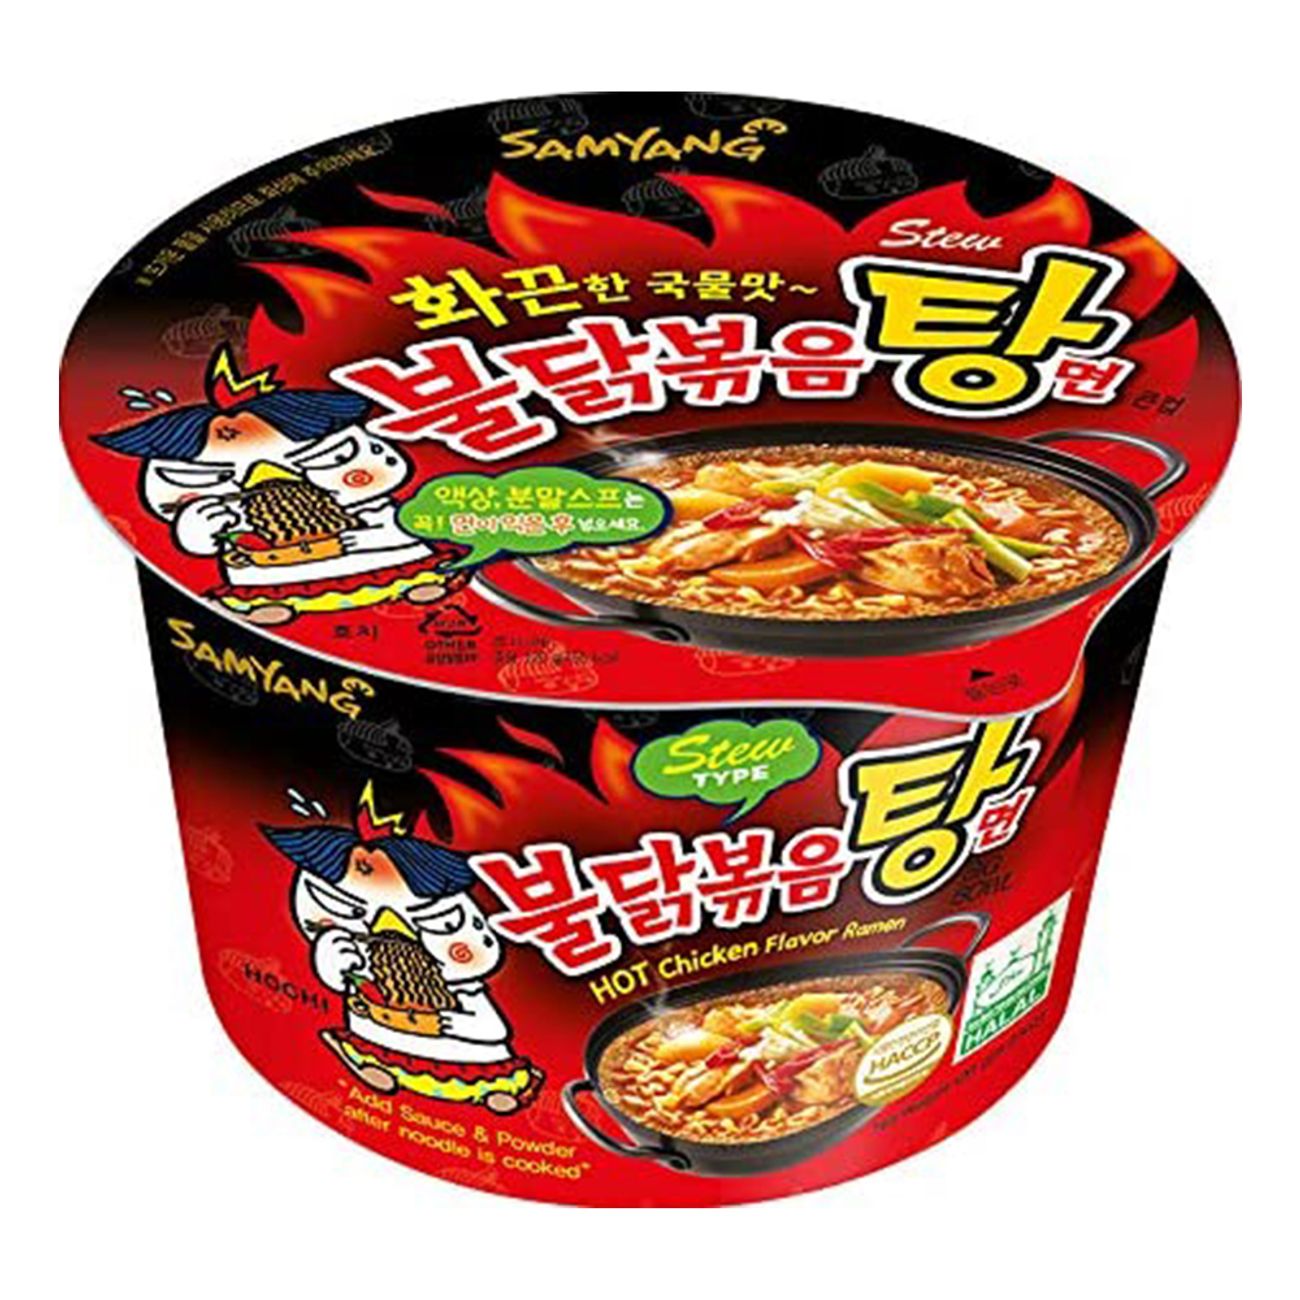 samyang-hot-chicken-stew-ramen-bowl-94781-1